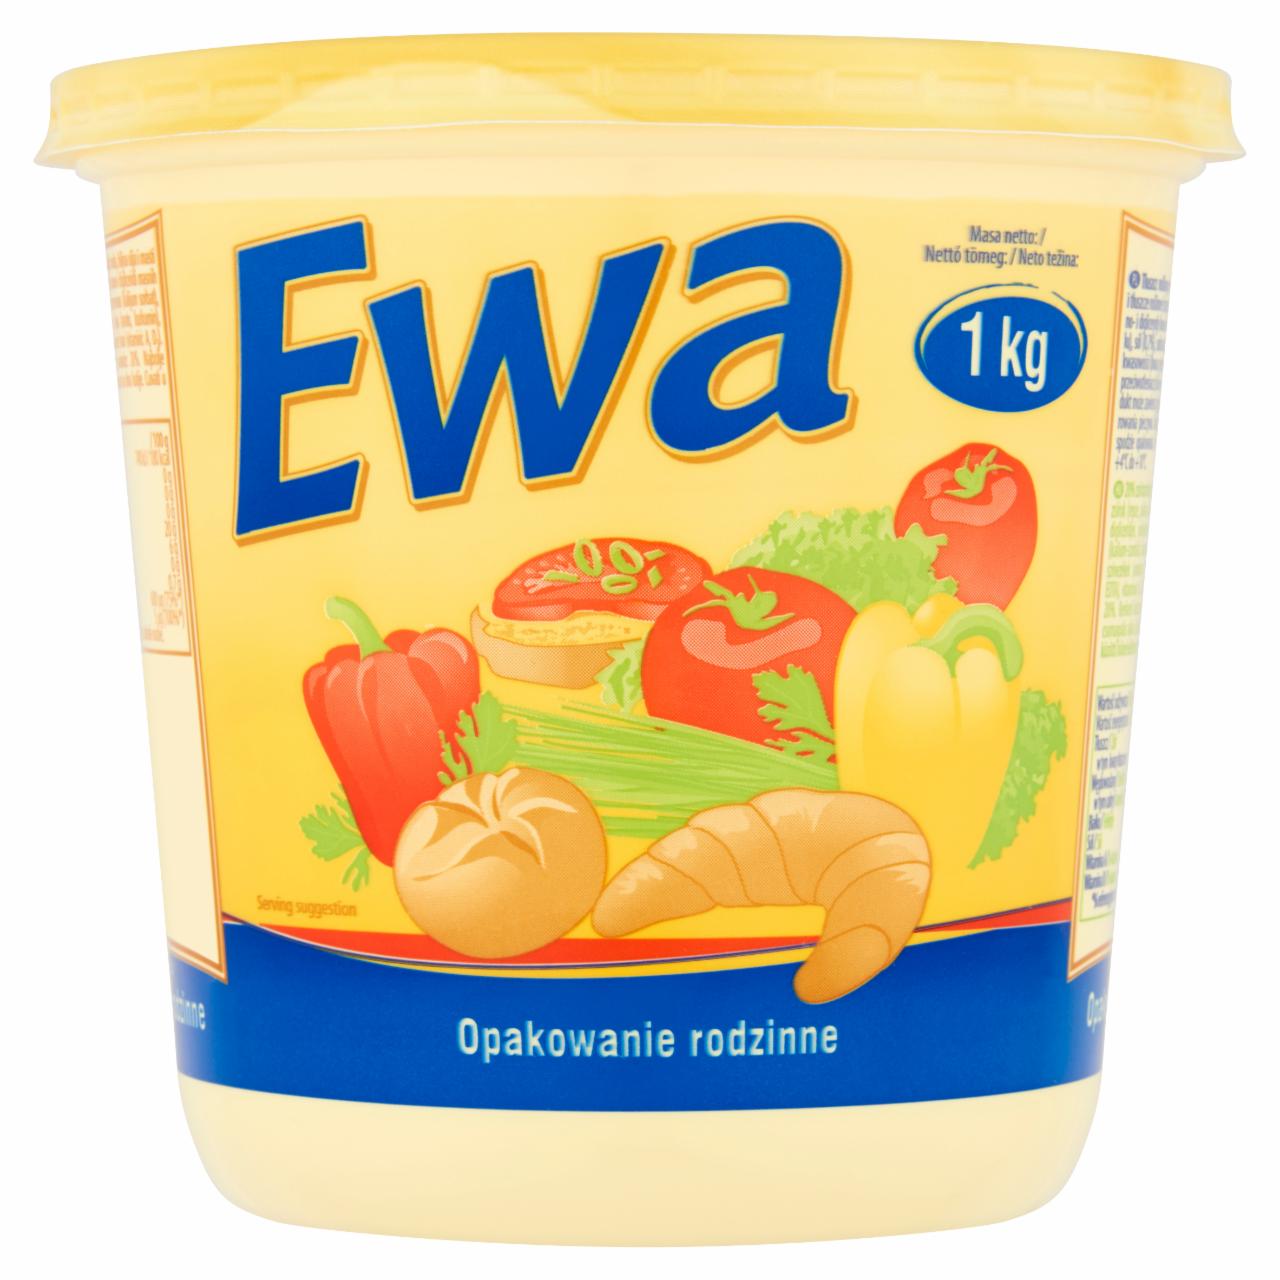 Képek - Ewa 20% zsírtartalmú margarin 1 kg